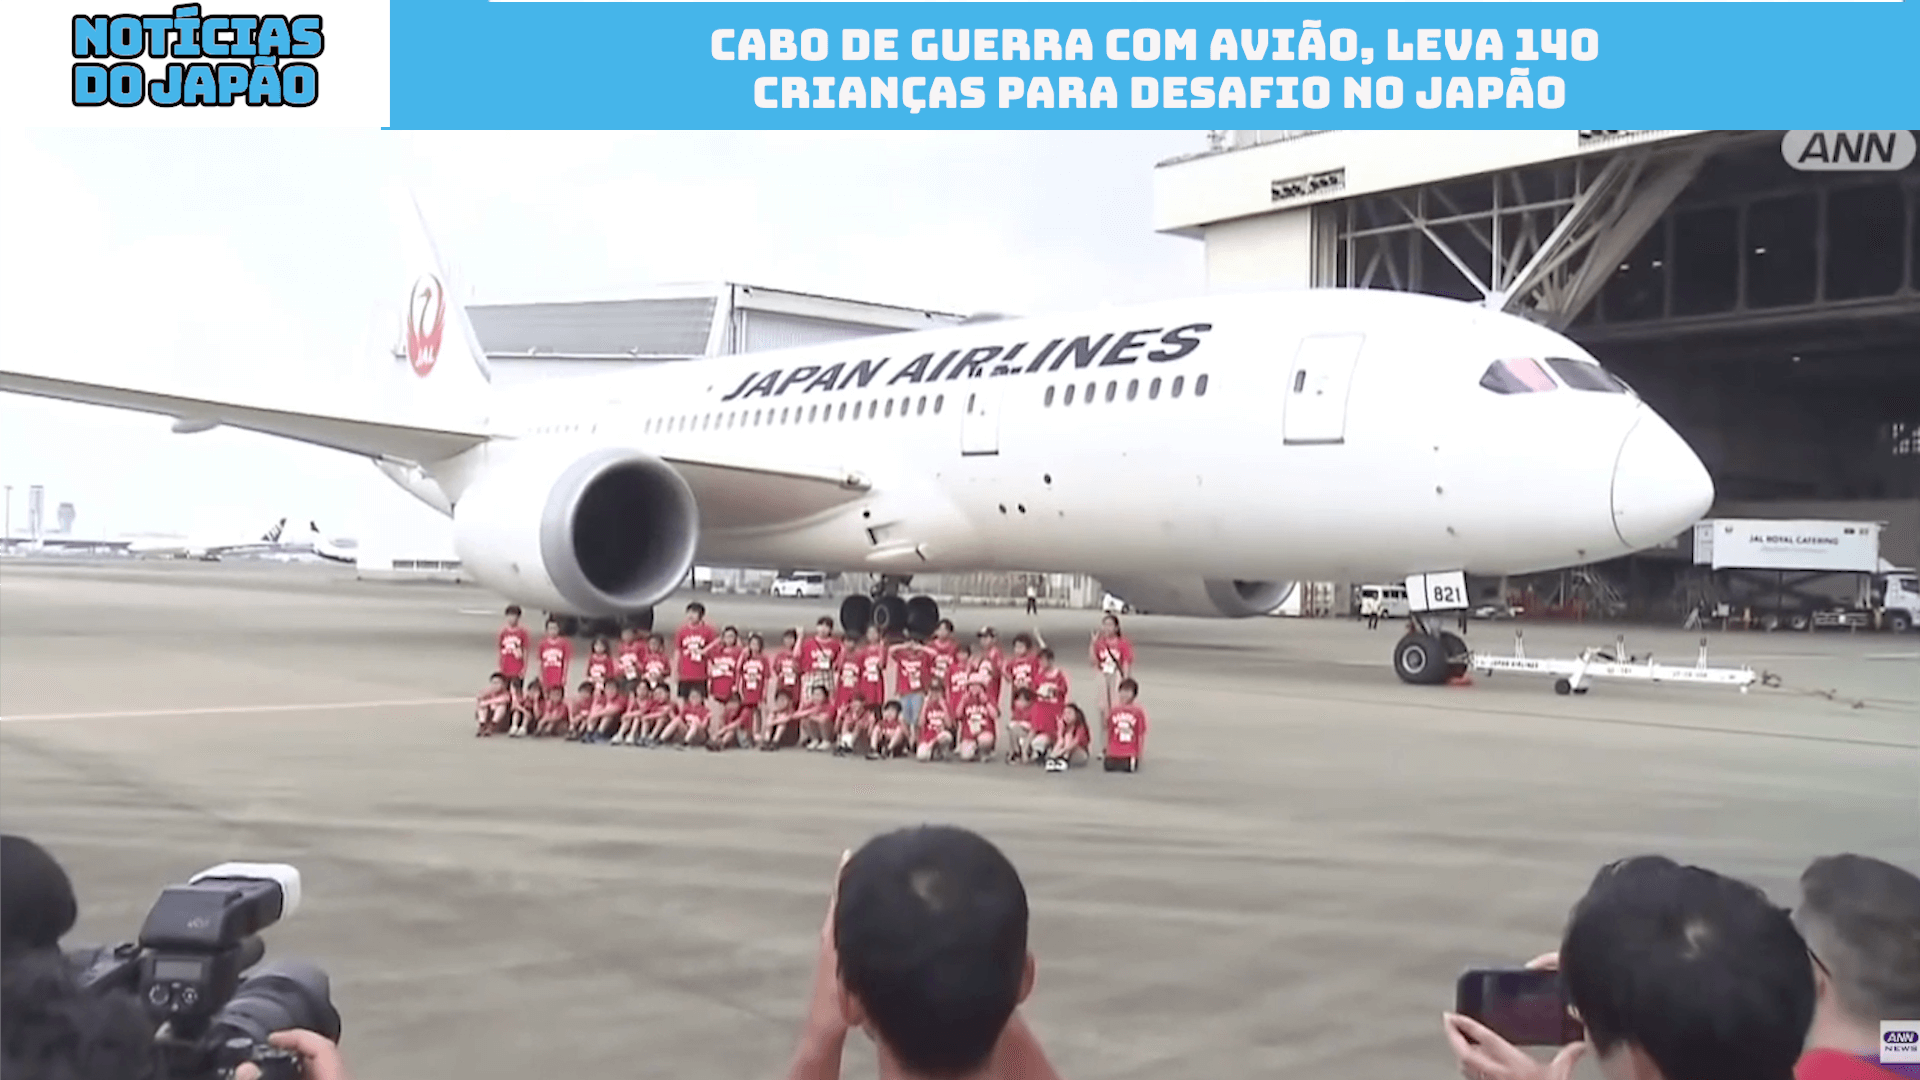 Cabo de guerra com avião leva 140 crianças para desafio no Japão 